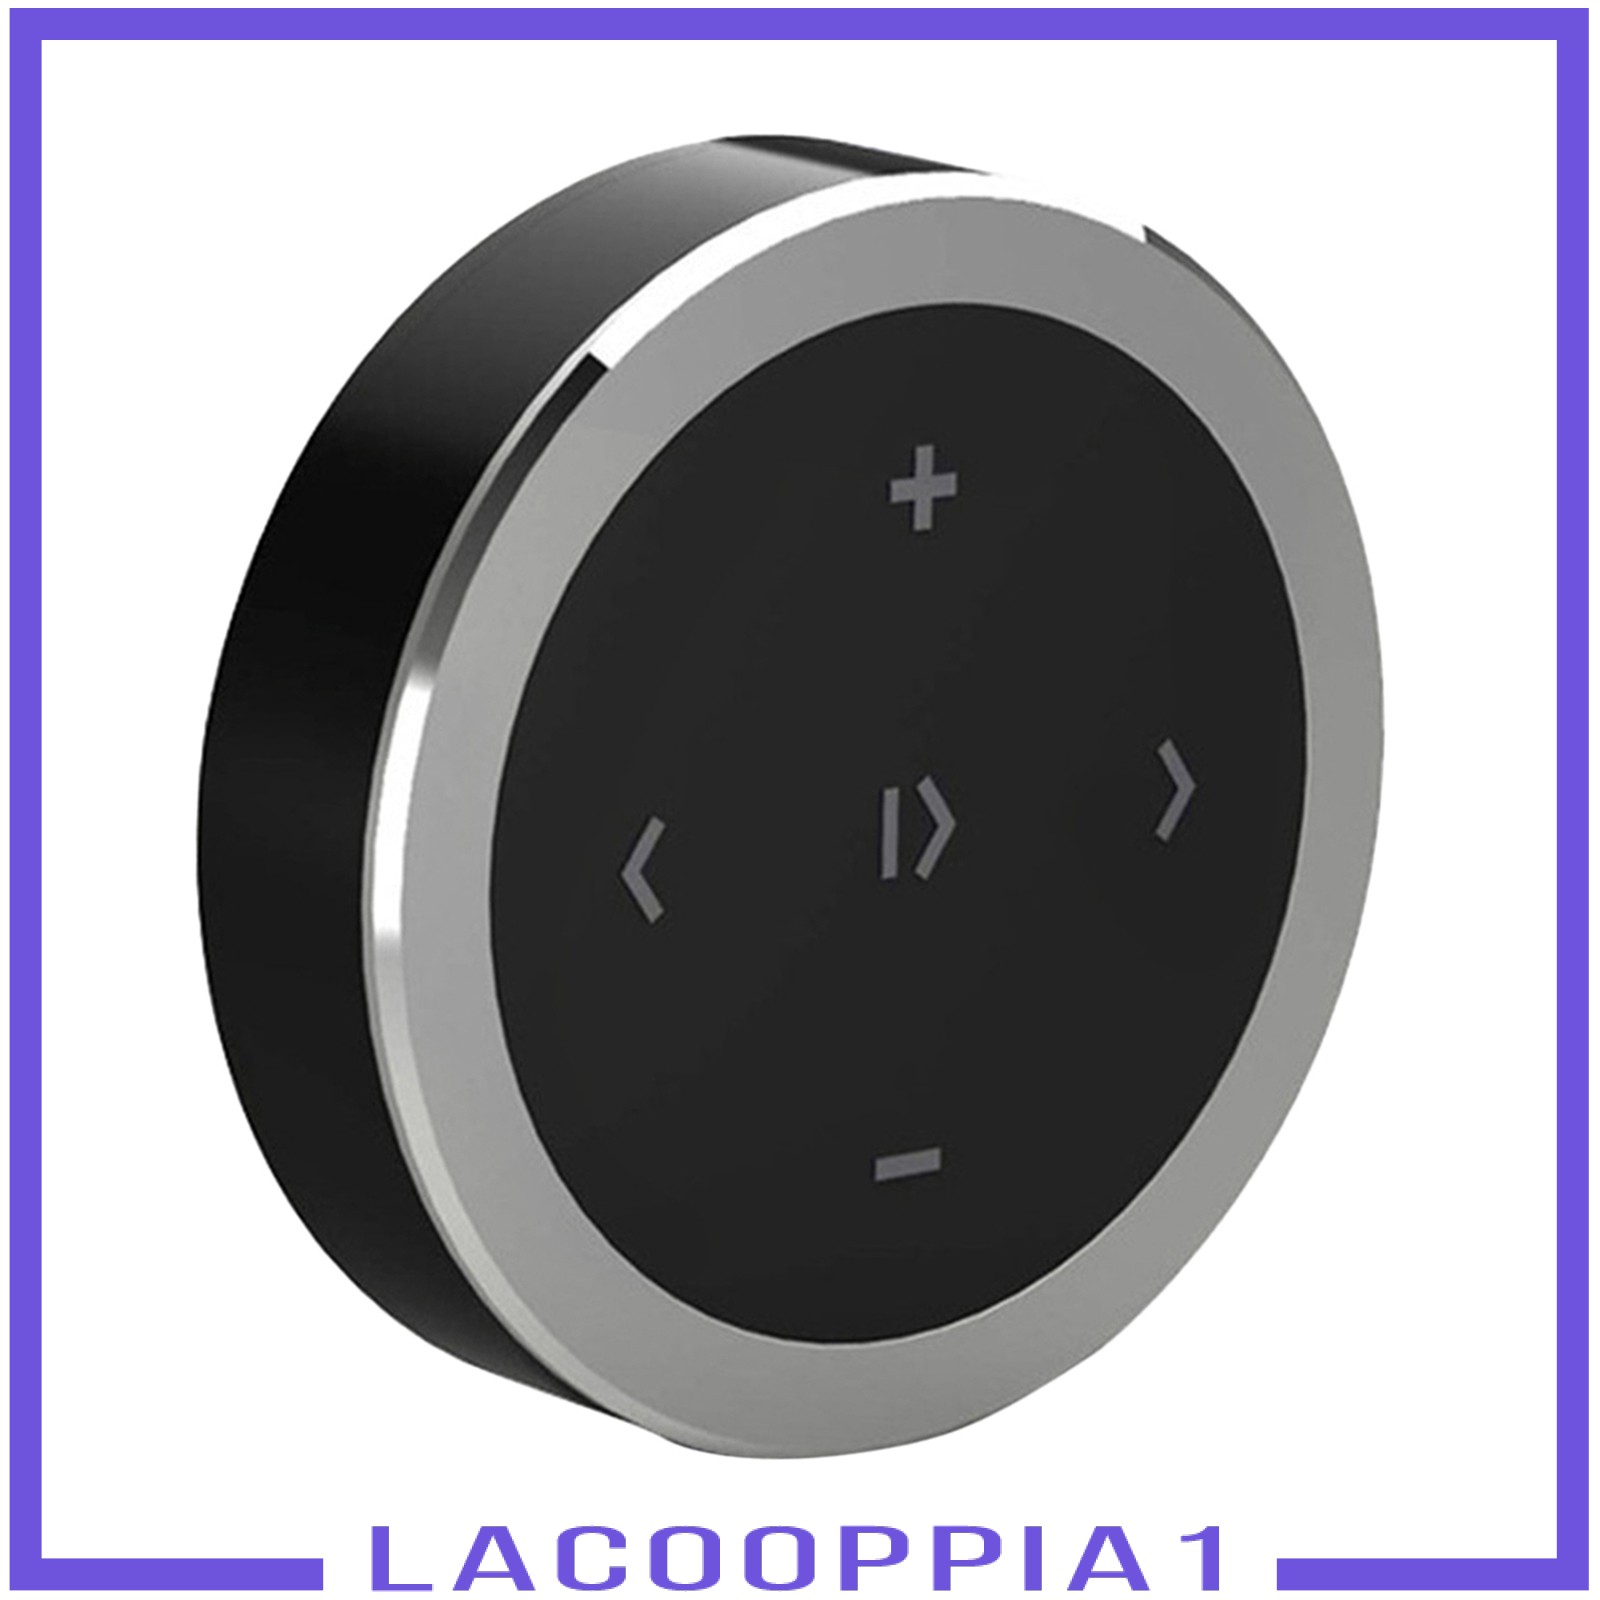 Máy Nghe Nhạc Mp3 Lapopopia1 Kết Nối Bluetooth 4.0